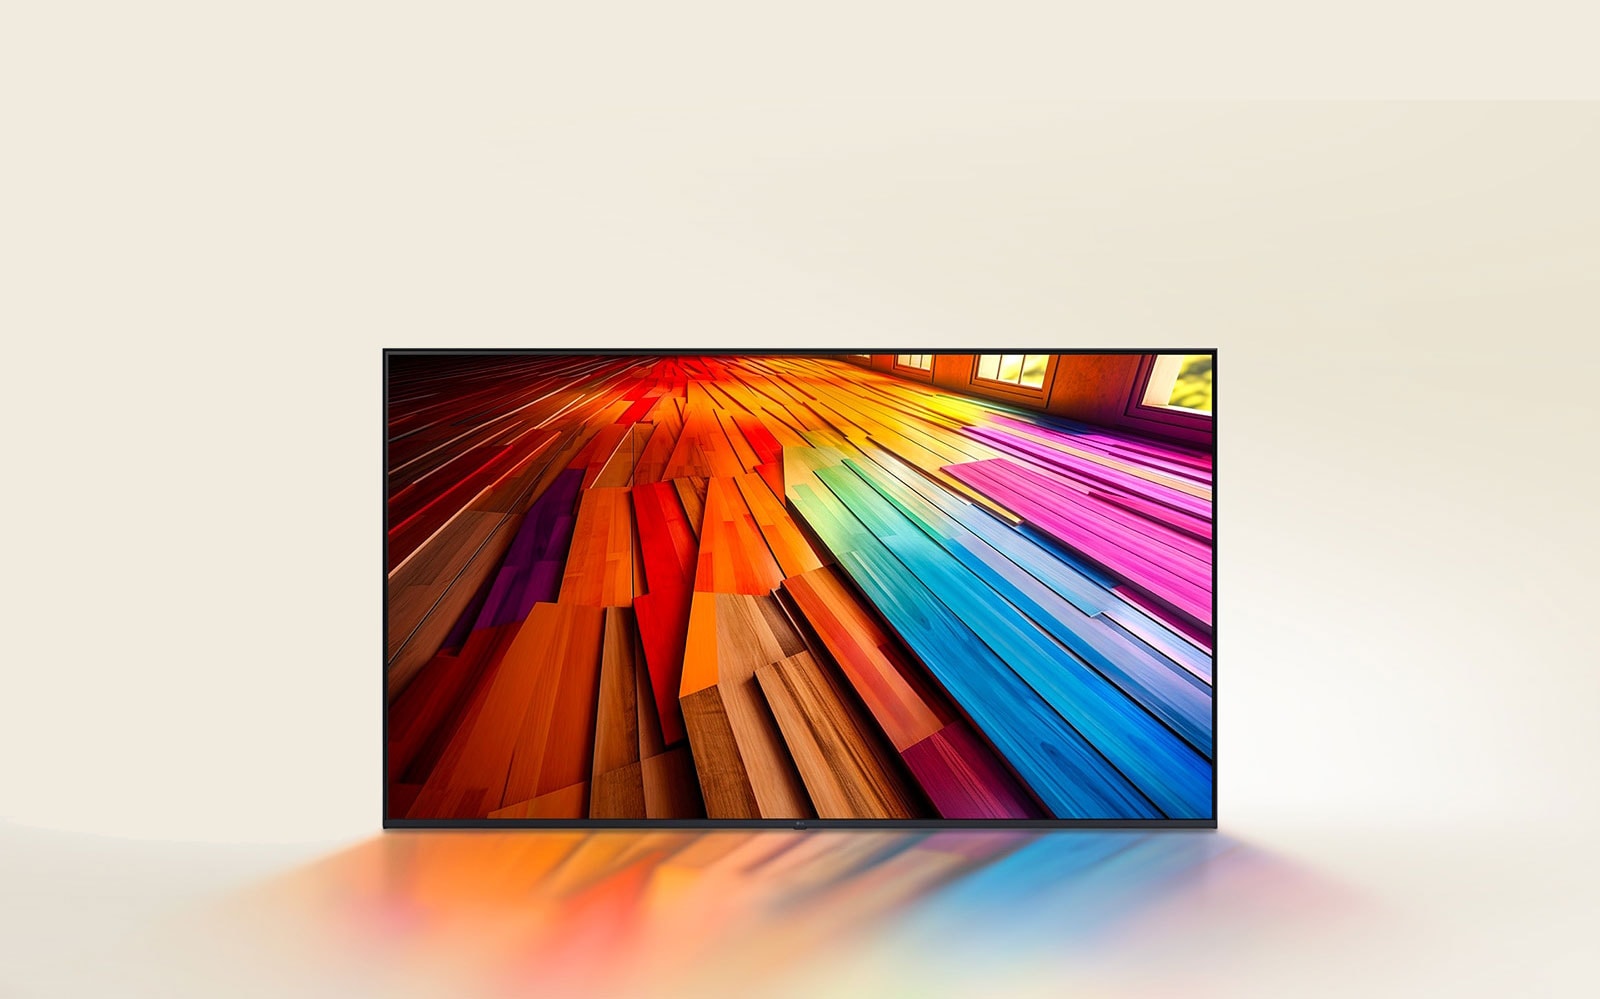 На экране телевизора LG UHD TV отображается длинный участок паркетного пола, окрашенный в яркие цвета.